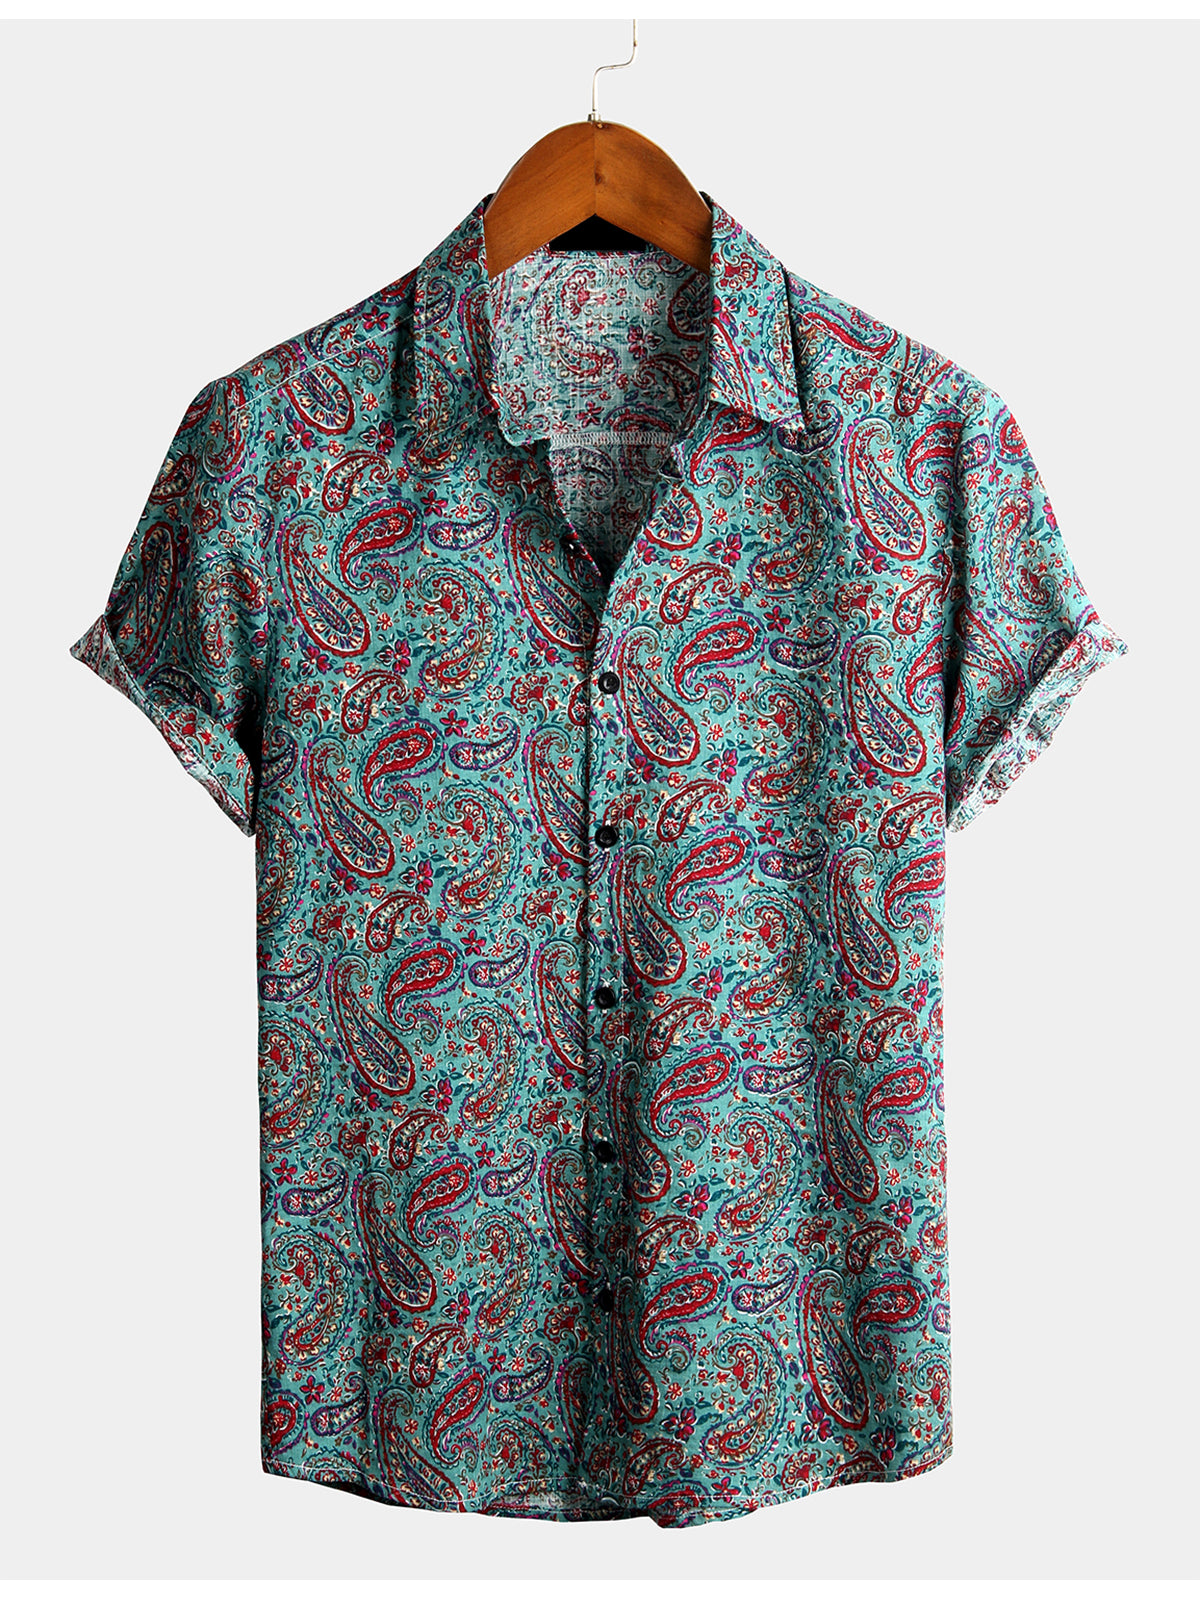 Men's Paisley Vintage Cotton Retro 70s Shirt